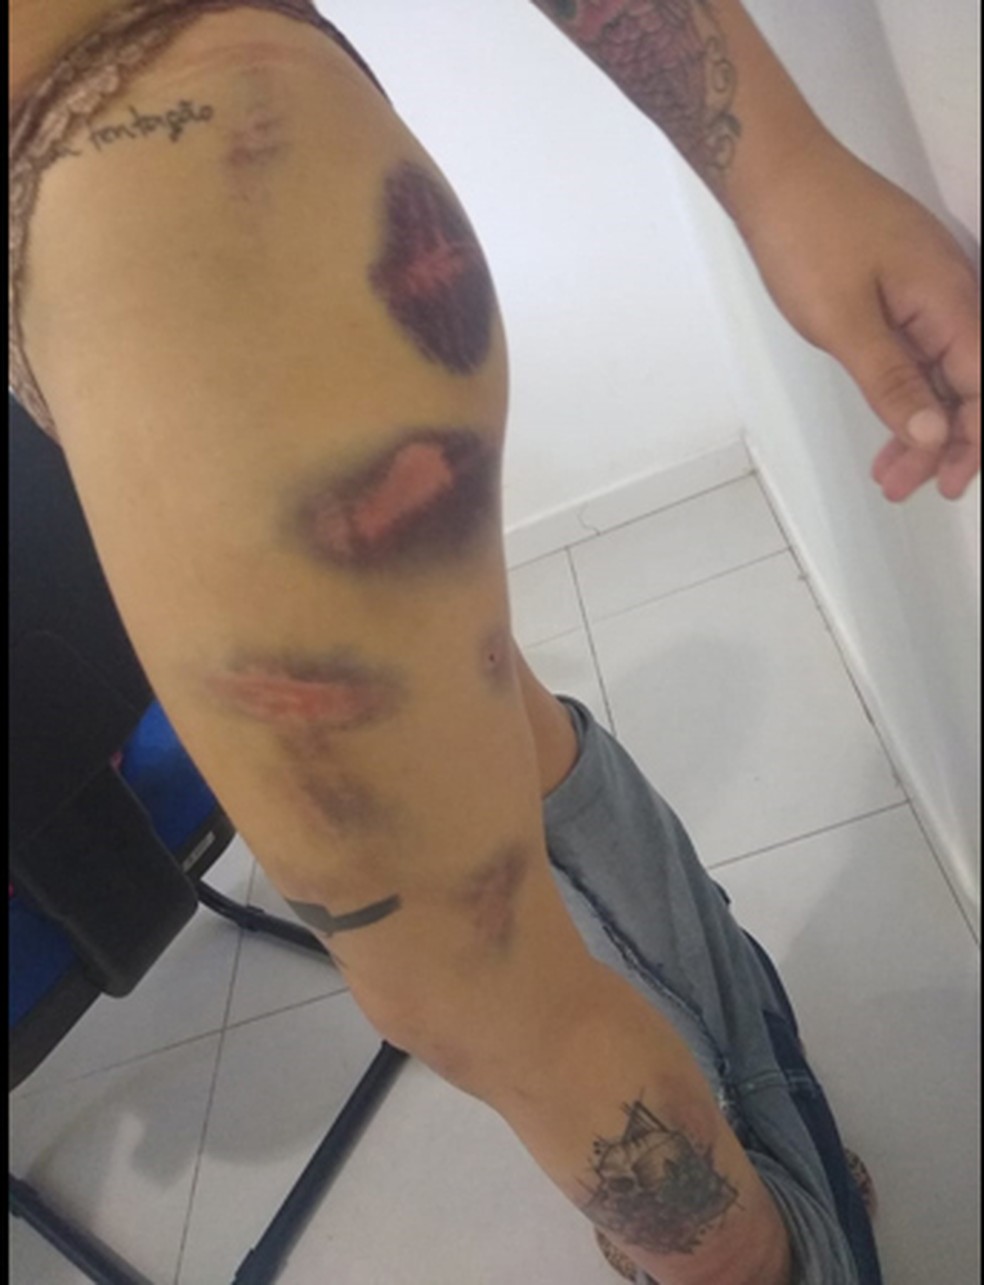 Mulher é torturada por ex-namorado em Icoaraci, distrito de Belém — Foto: Ministério Público do Pará